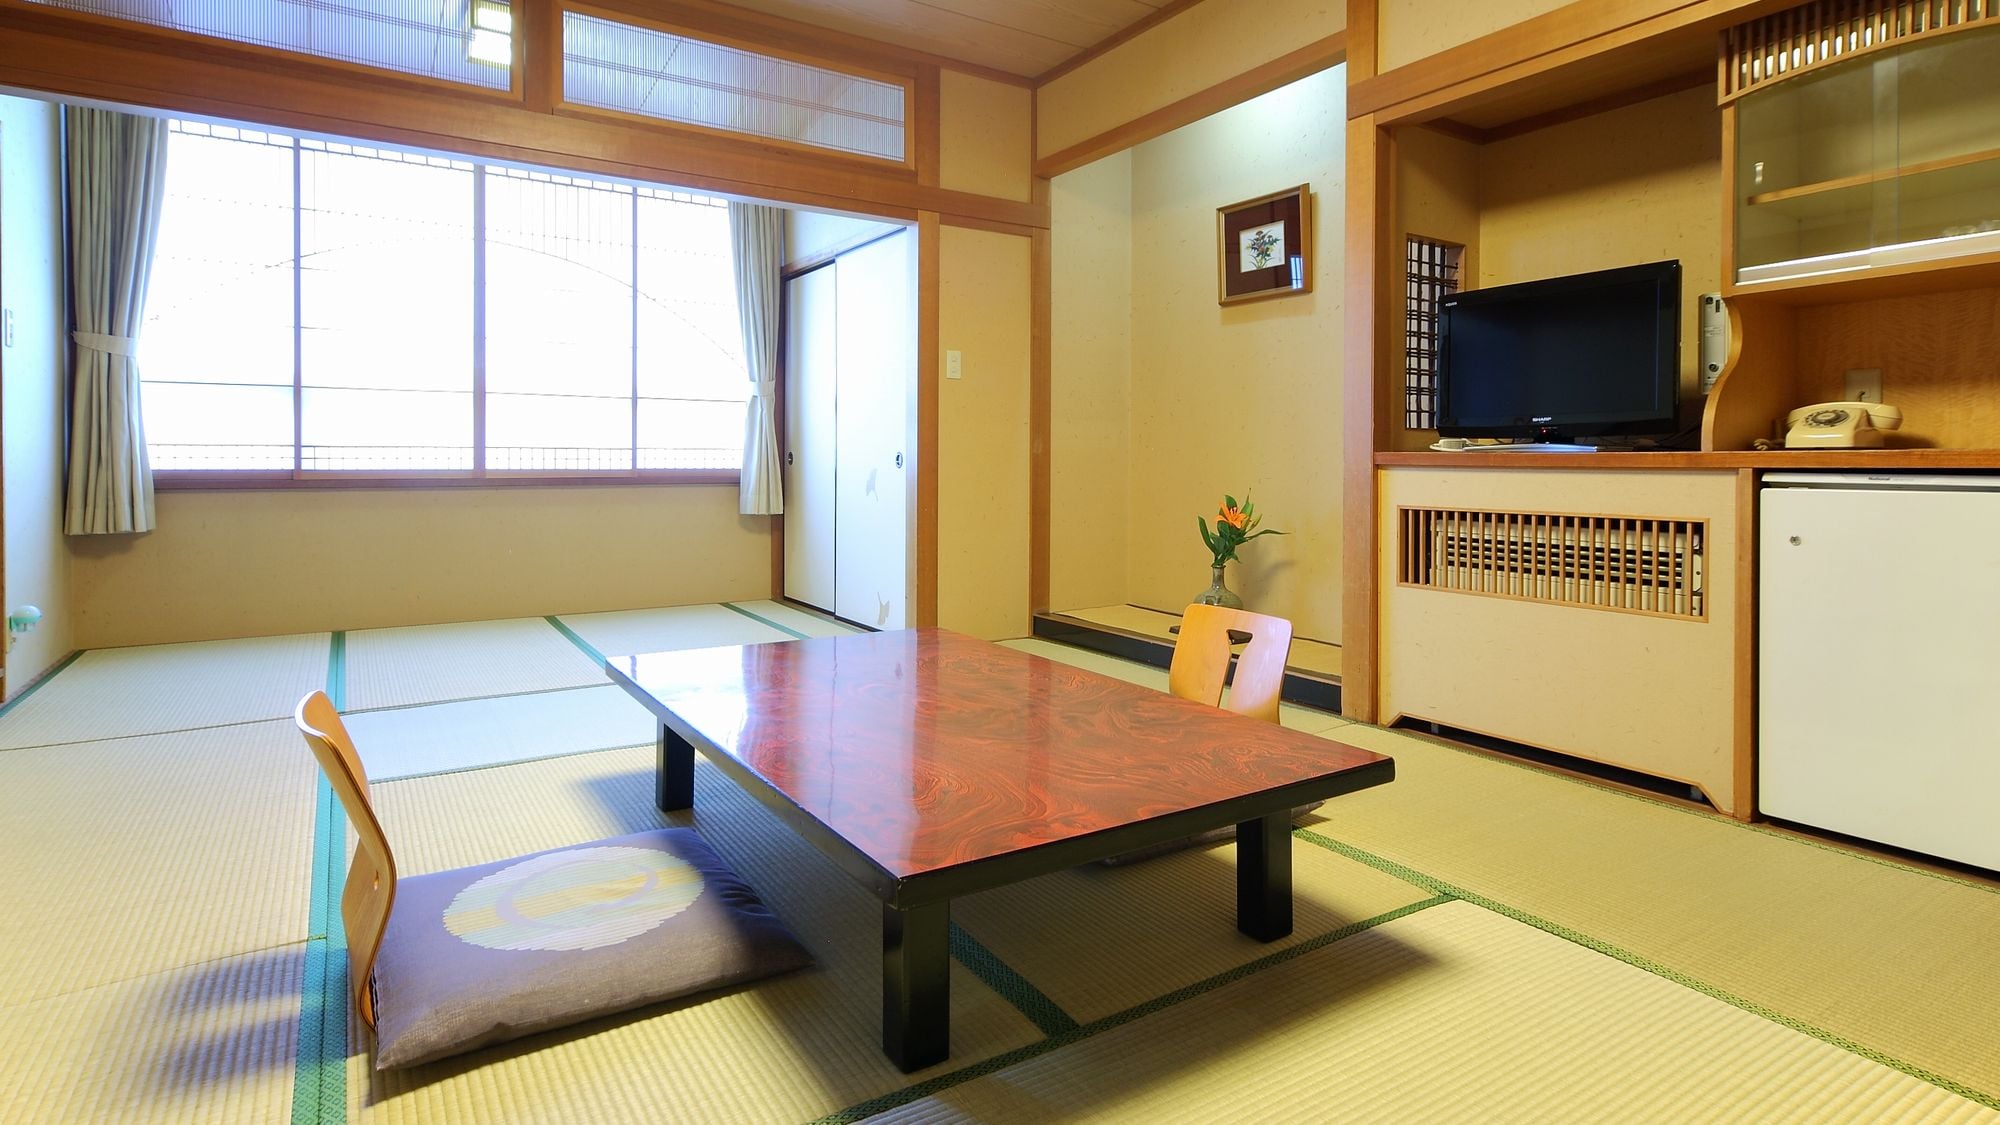 [ห้องสไตล์ญี่ปุ่น] * ห้องกว้างขวางและน่าพักผ่อน